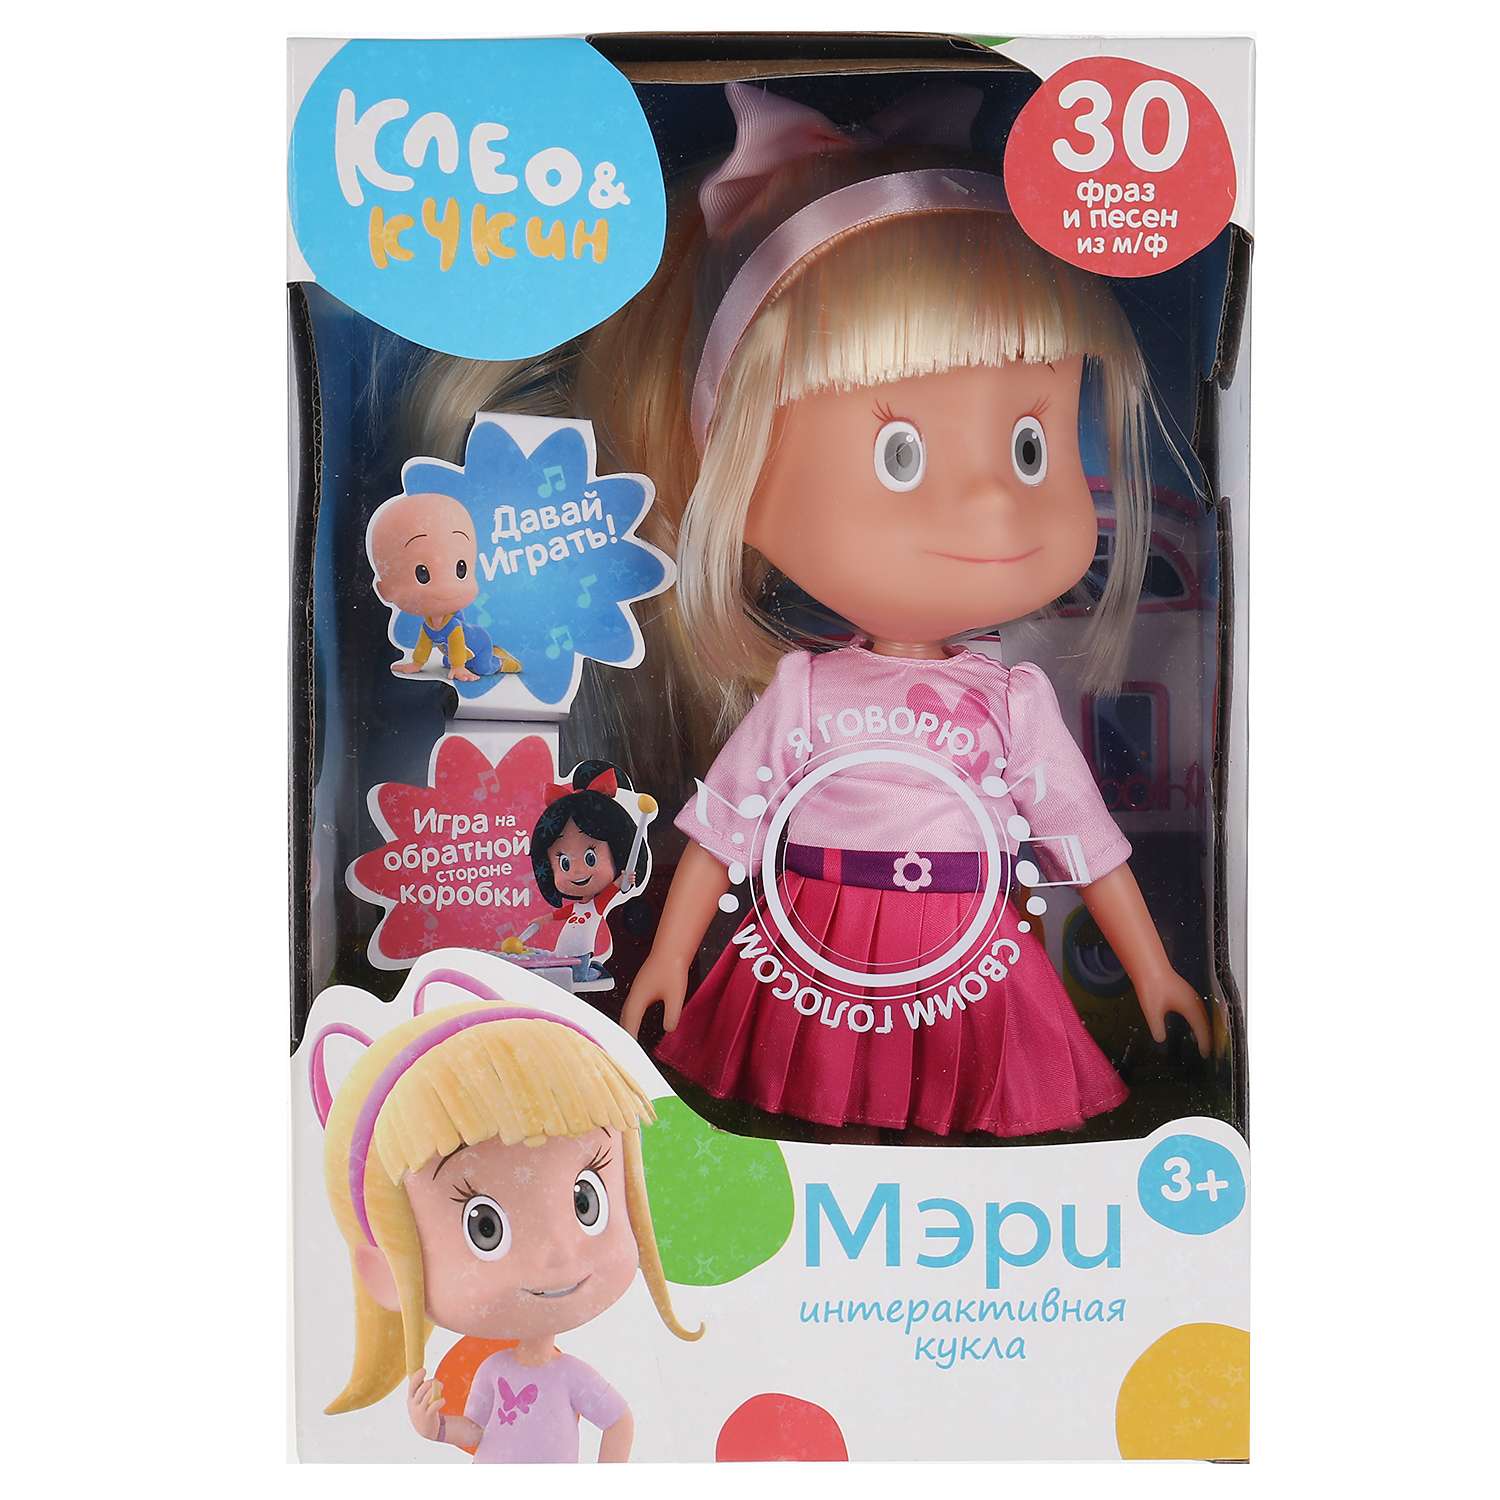 Кукла Карапуз Клео и Кукин Мэри 319124 319124 - фото 2